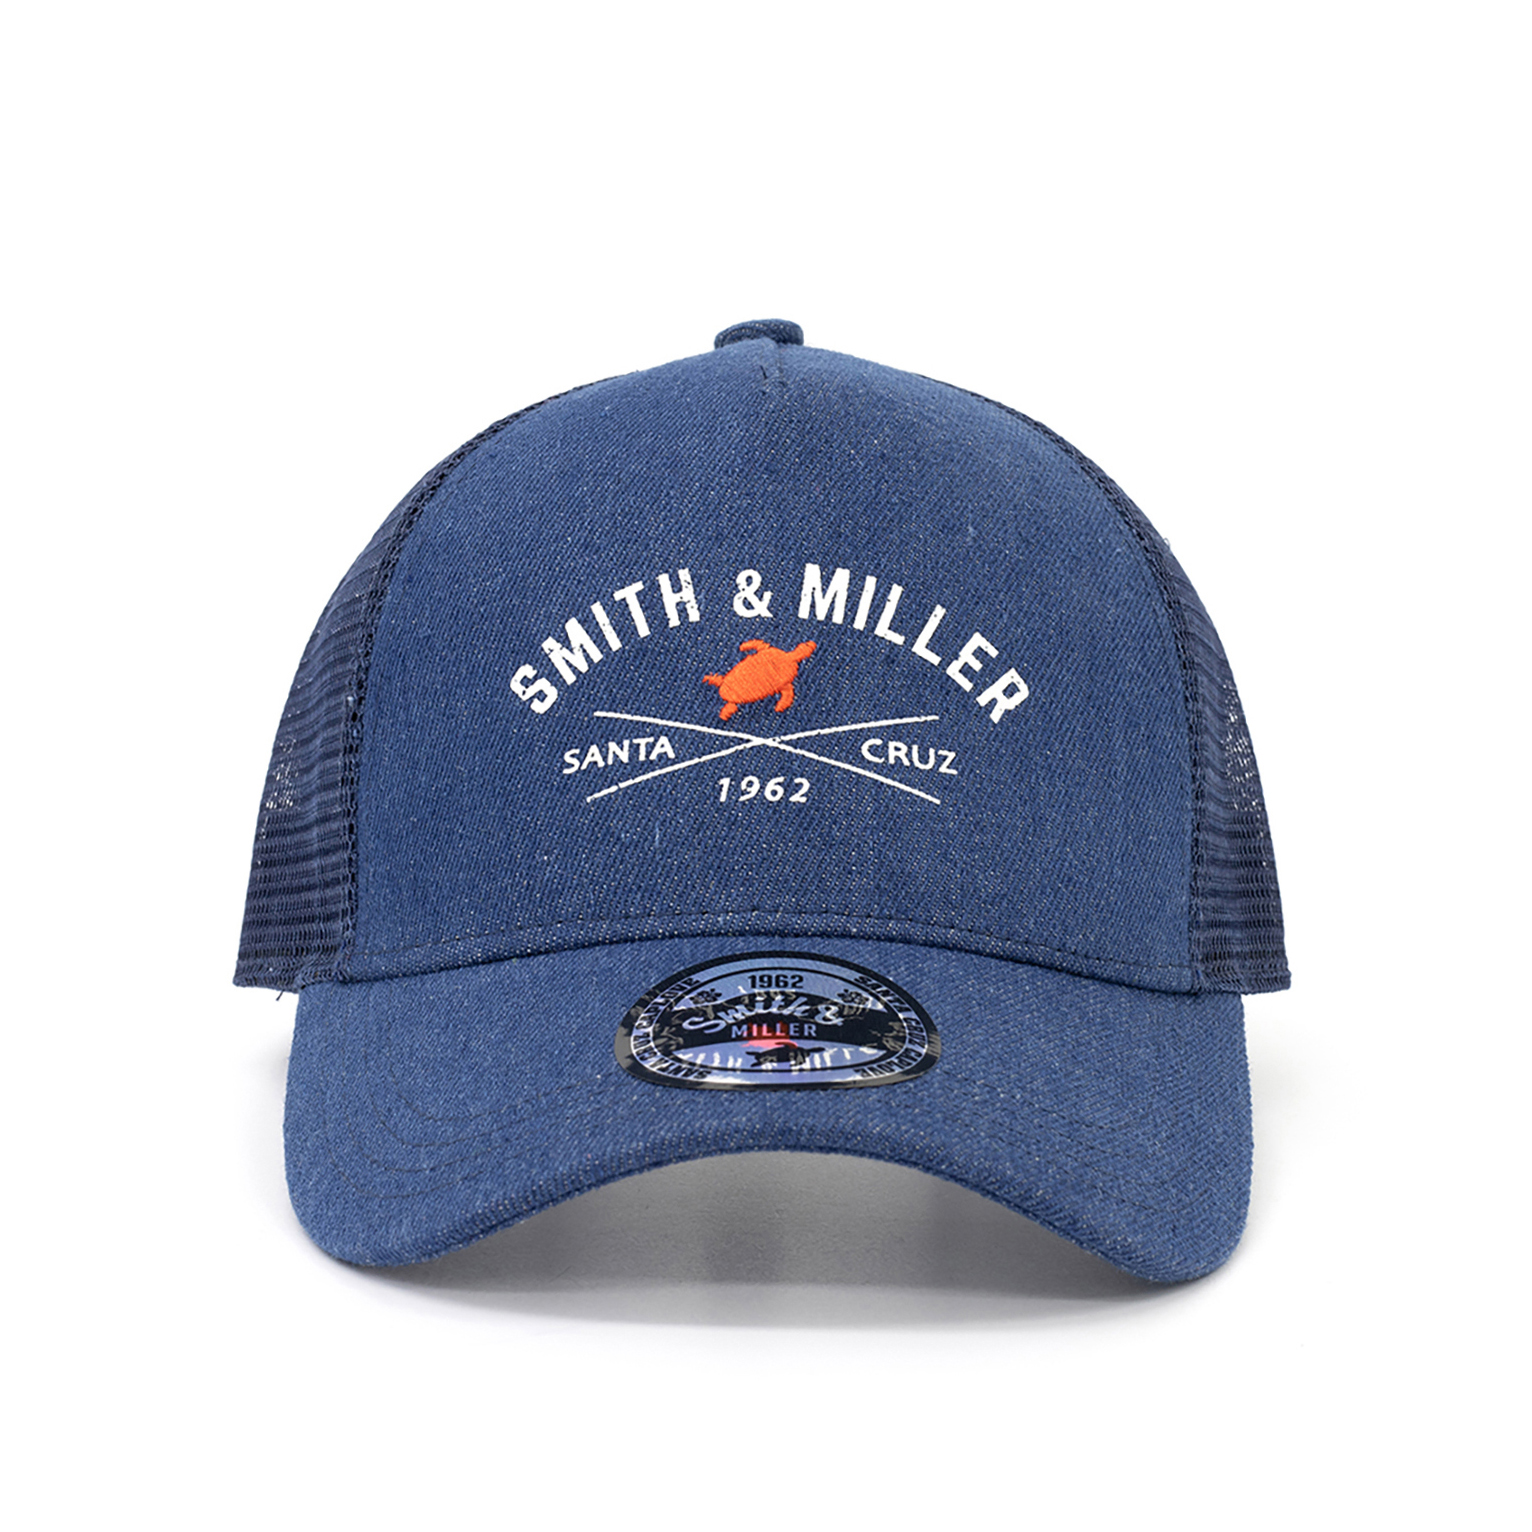 Smith & Miller Dawes Unisex Trucker Cap, denim - navy